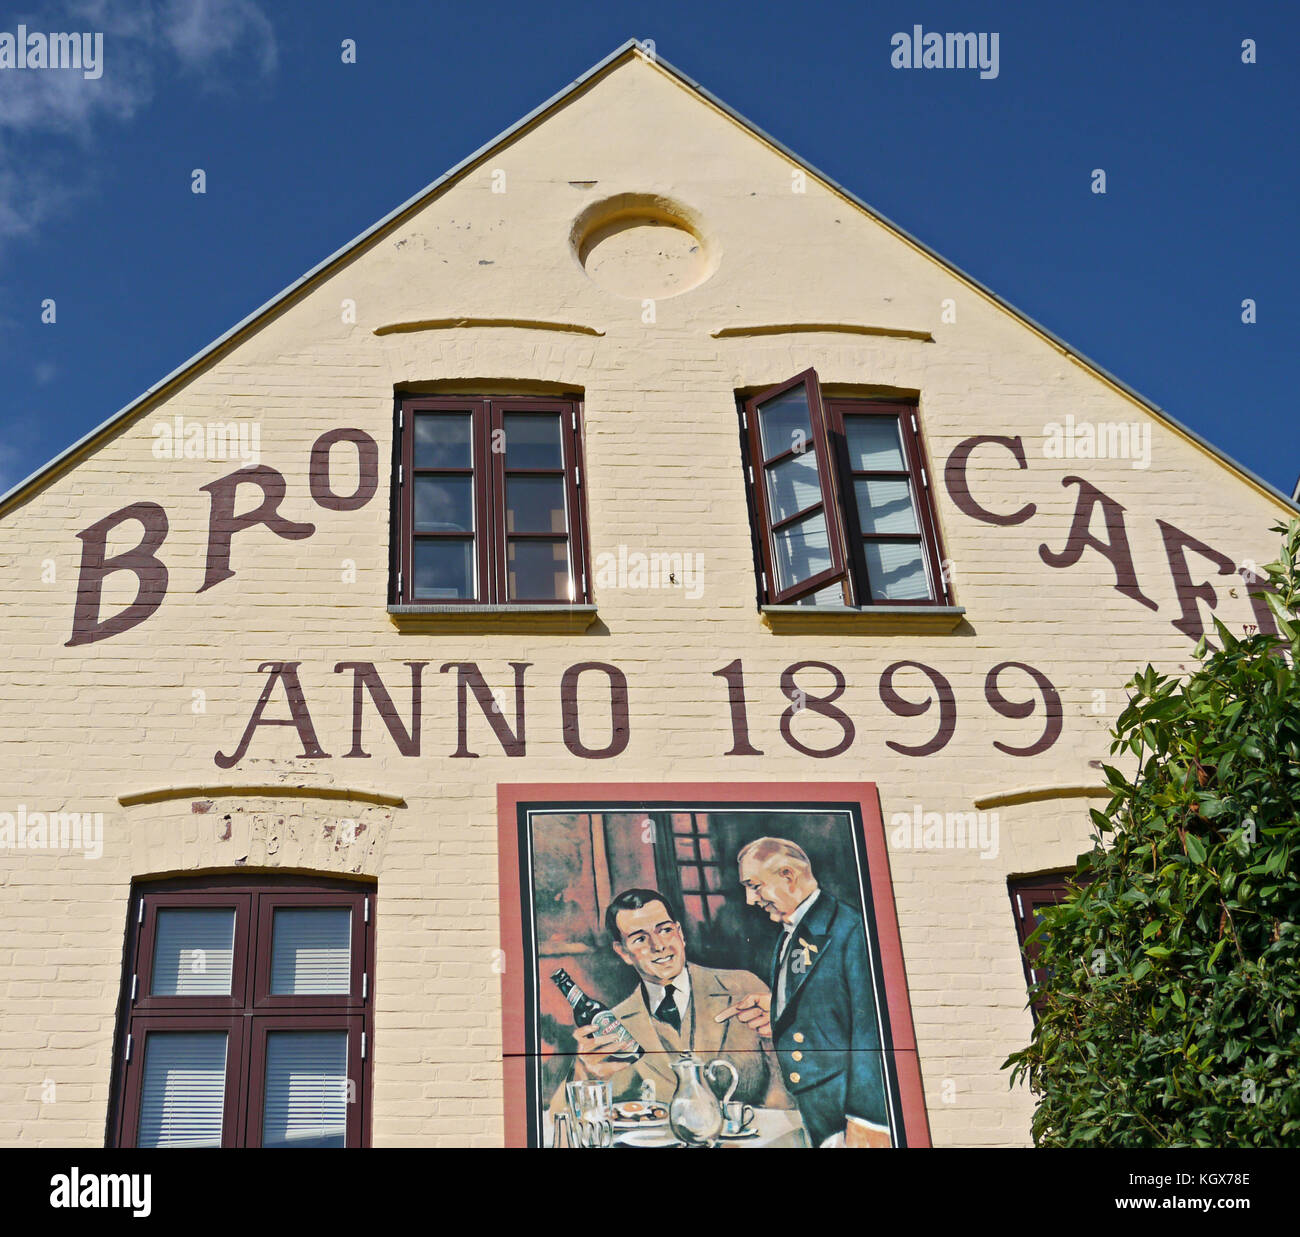 Fassade des alten Bro Cafés in Aarhus, Dänemark Stockfoto